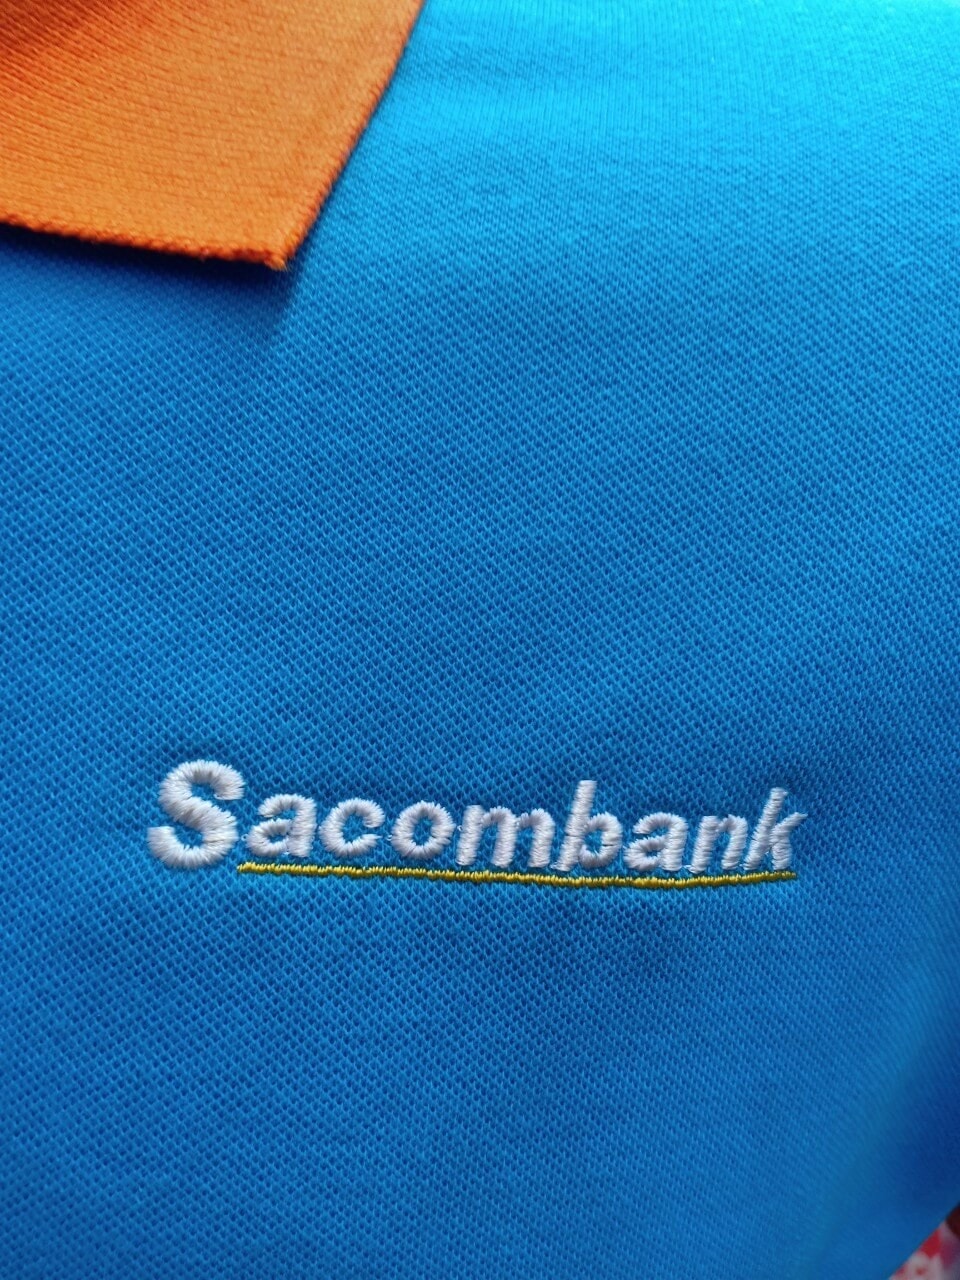 Sacombank 4